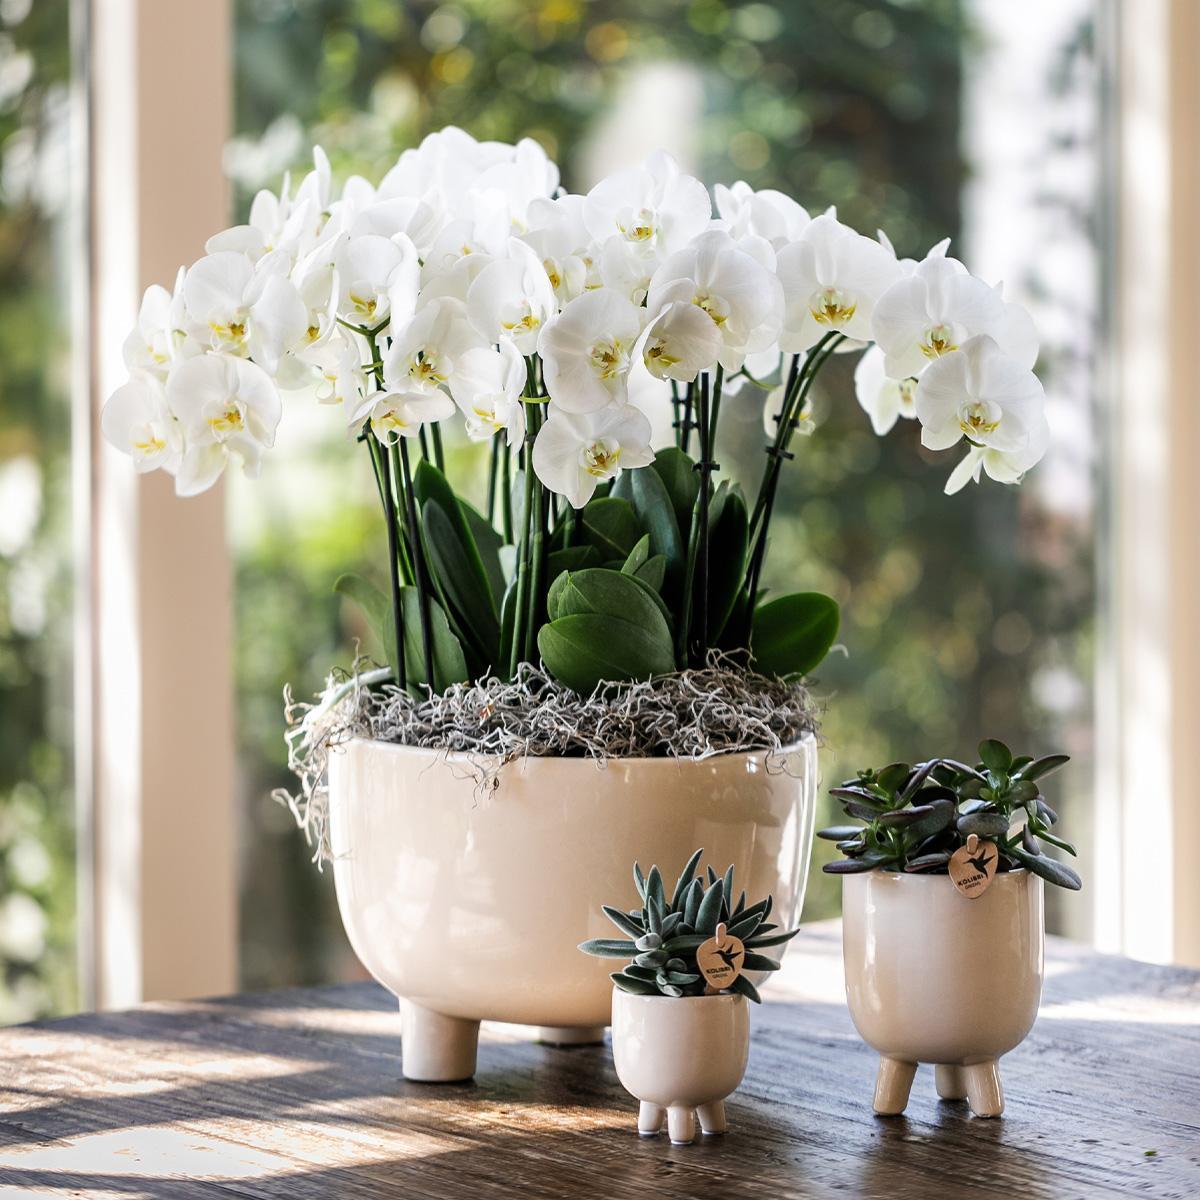 Witte plantenset met 3 orchideeën in een Gummy schaal, inclusief waterreservoir voor zelfvoorziening.